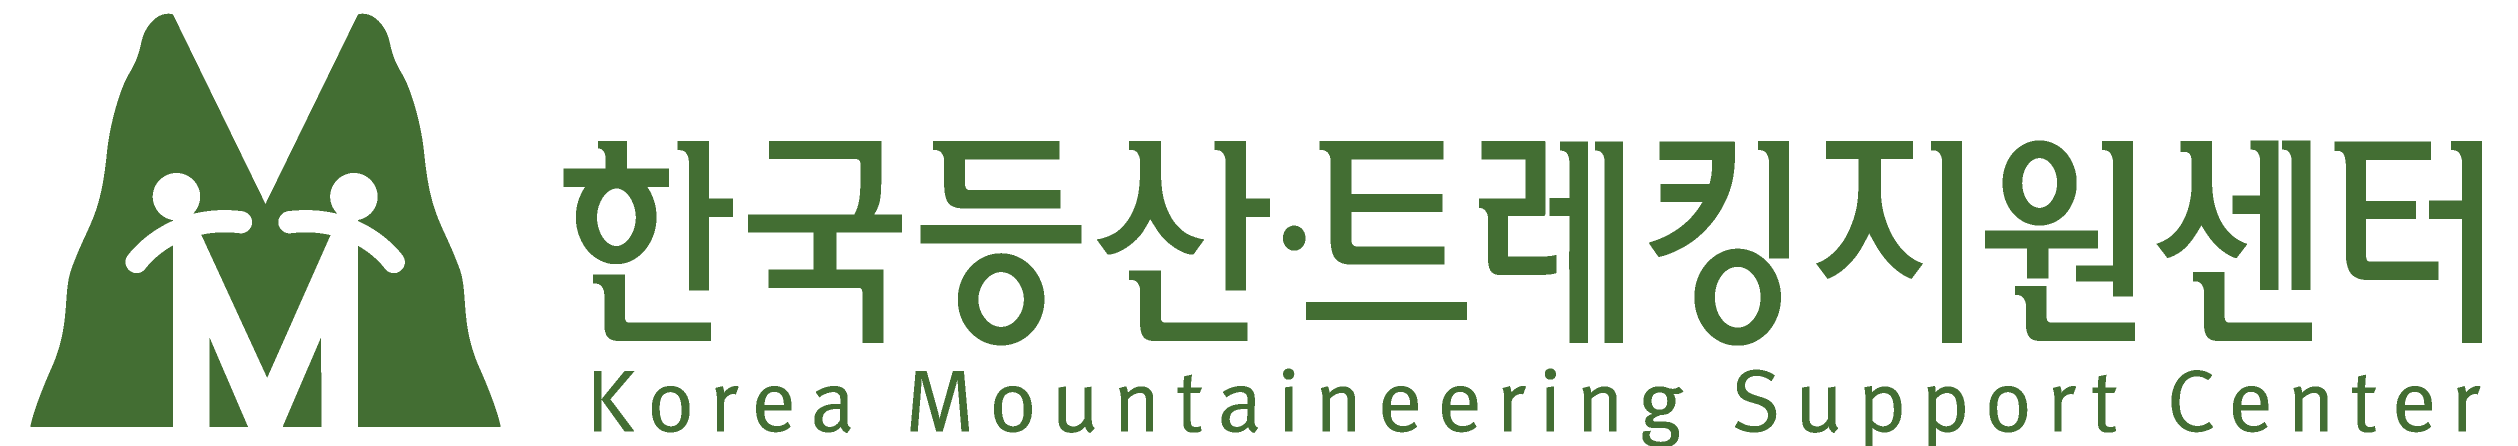 사본 -사본 -komount logo 칼라변경(우선 사용 TYPE-B).png